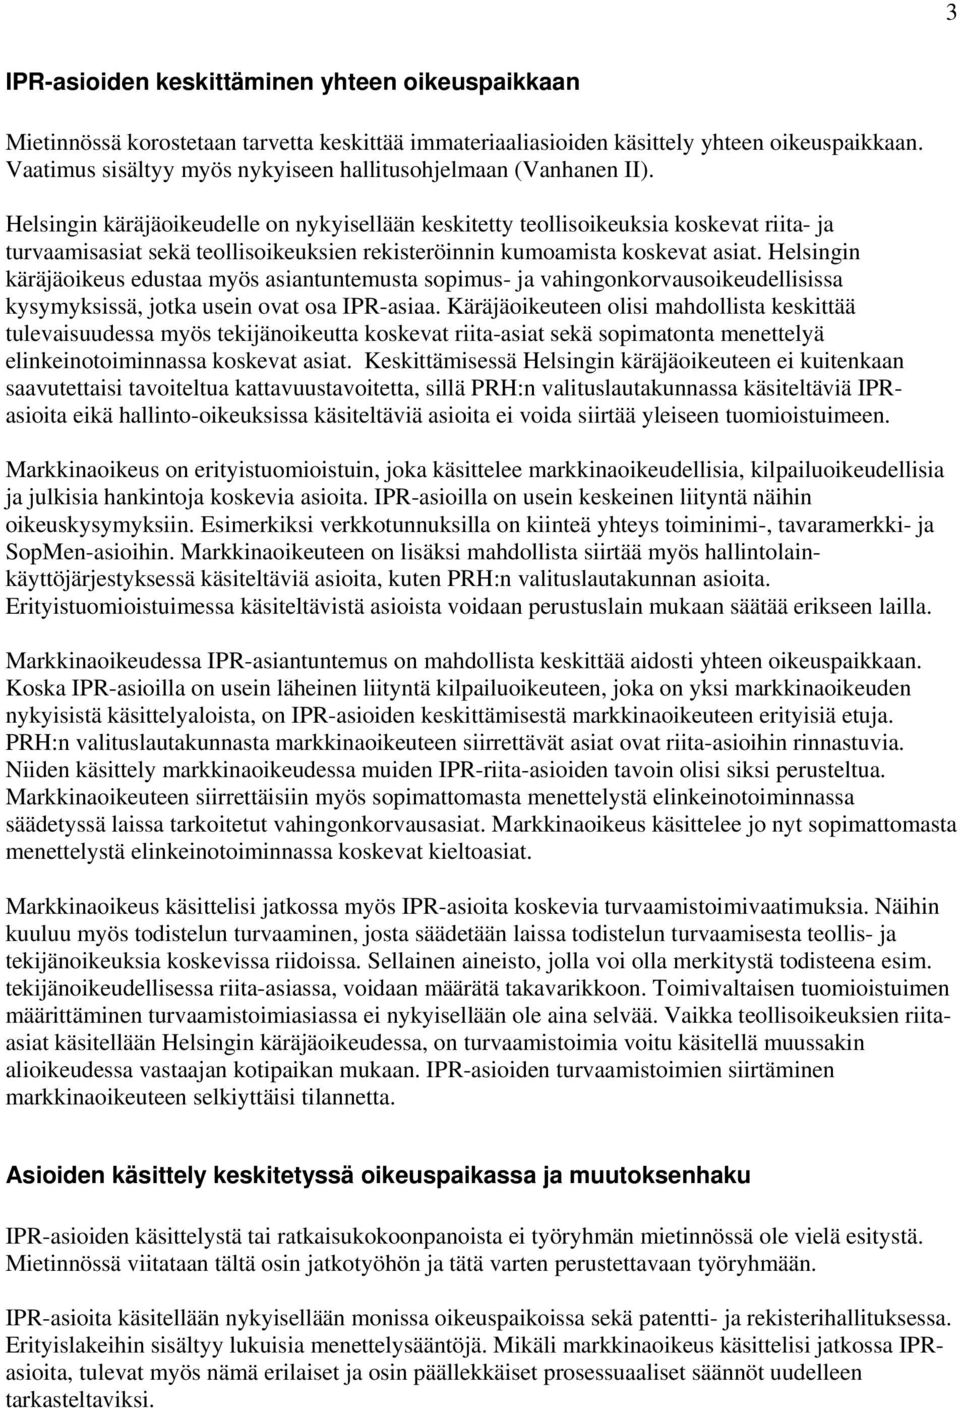 Helsingin käräjäoikeudelle on nykyisellään keskitetty teollisoikeuksia koskevat riita- ja turvaamisasiat sekä teollisoikeuksien rekisteröinnin kumoamista koskevat asiat.